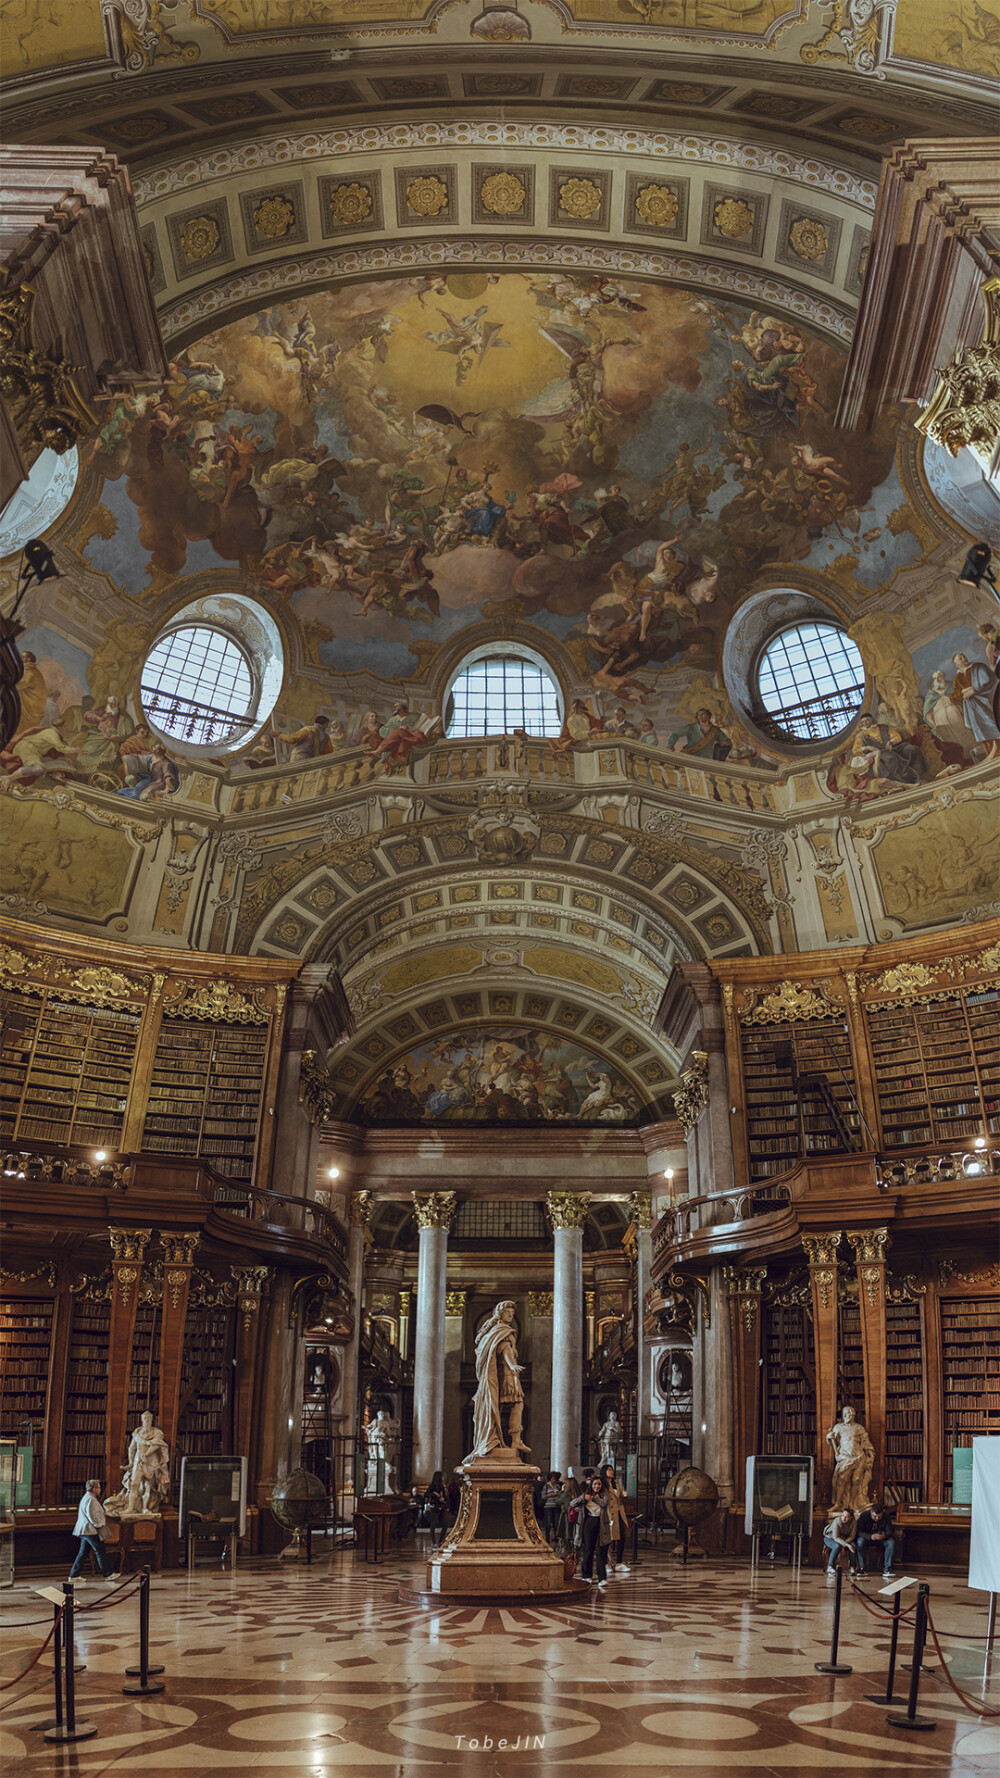 奥地利国家图书馆的辉煌大厅,名副其实, 是一座美轮美奂的巴洛克风格